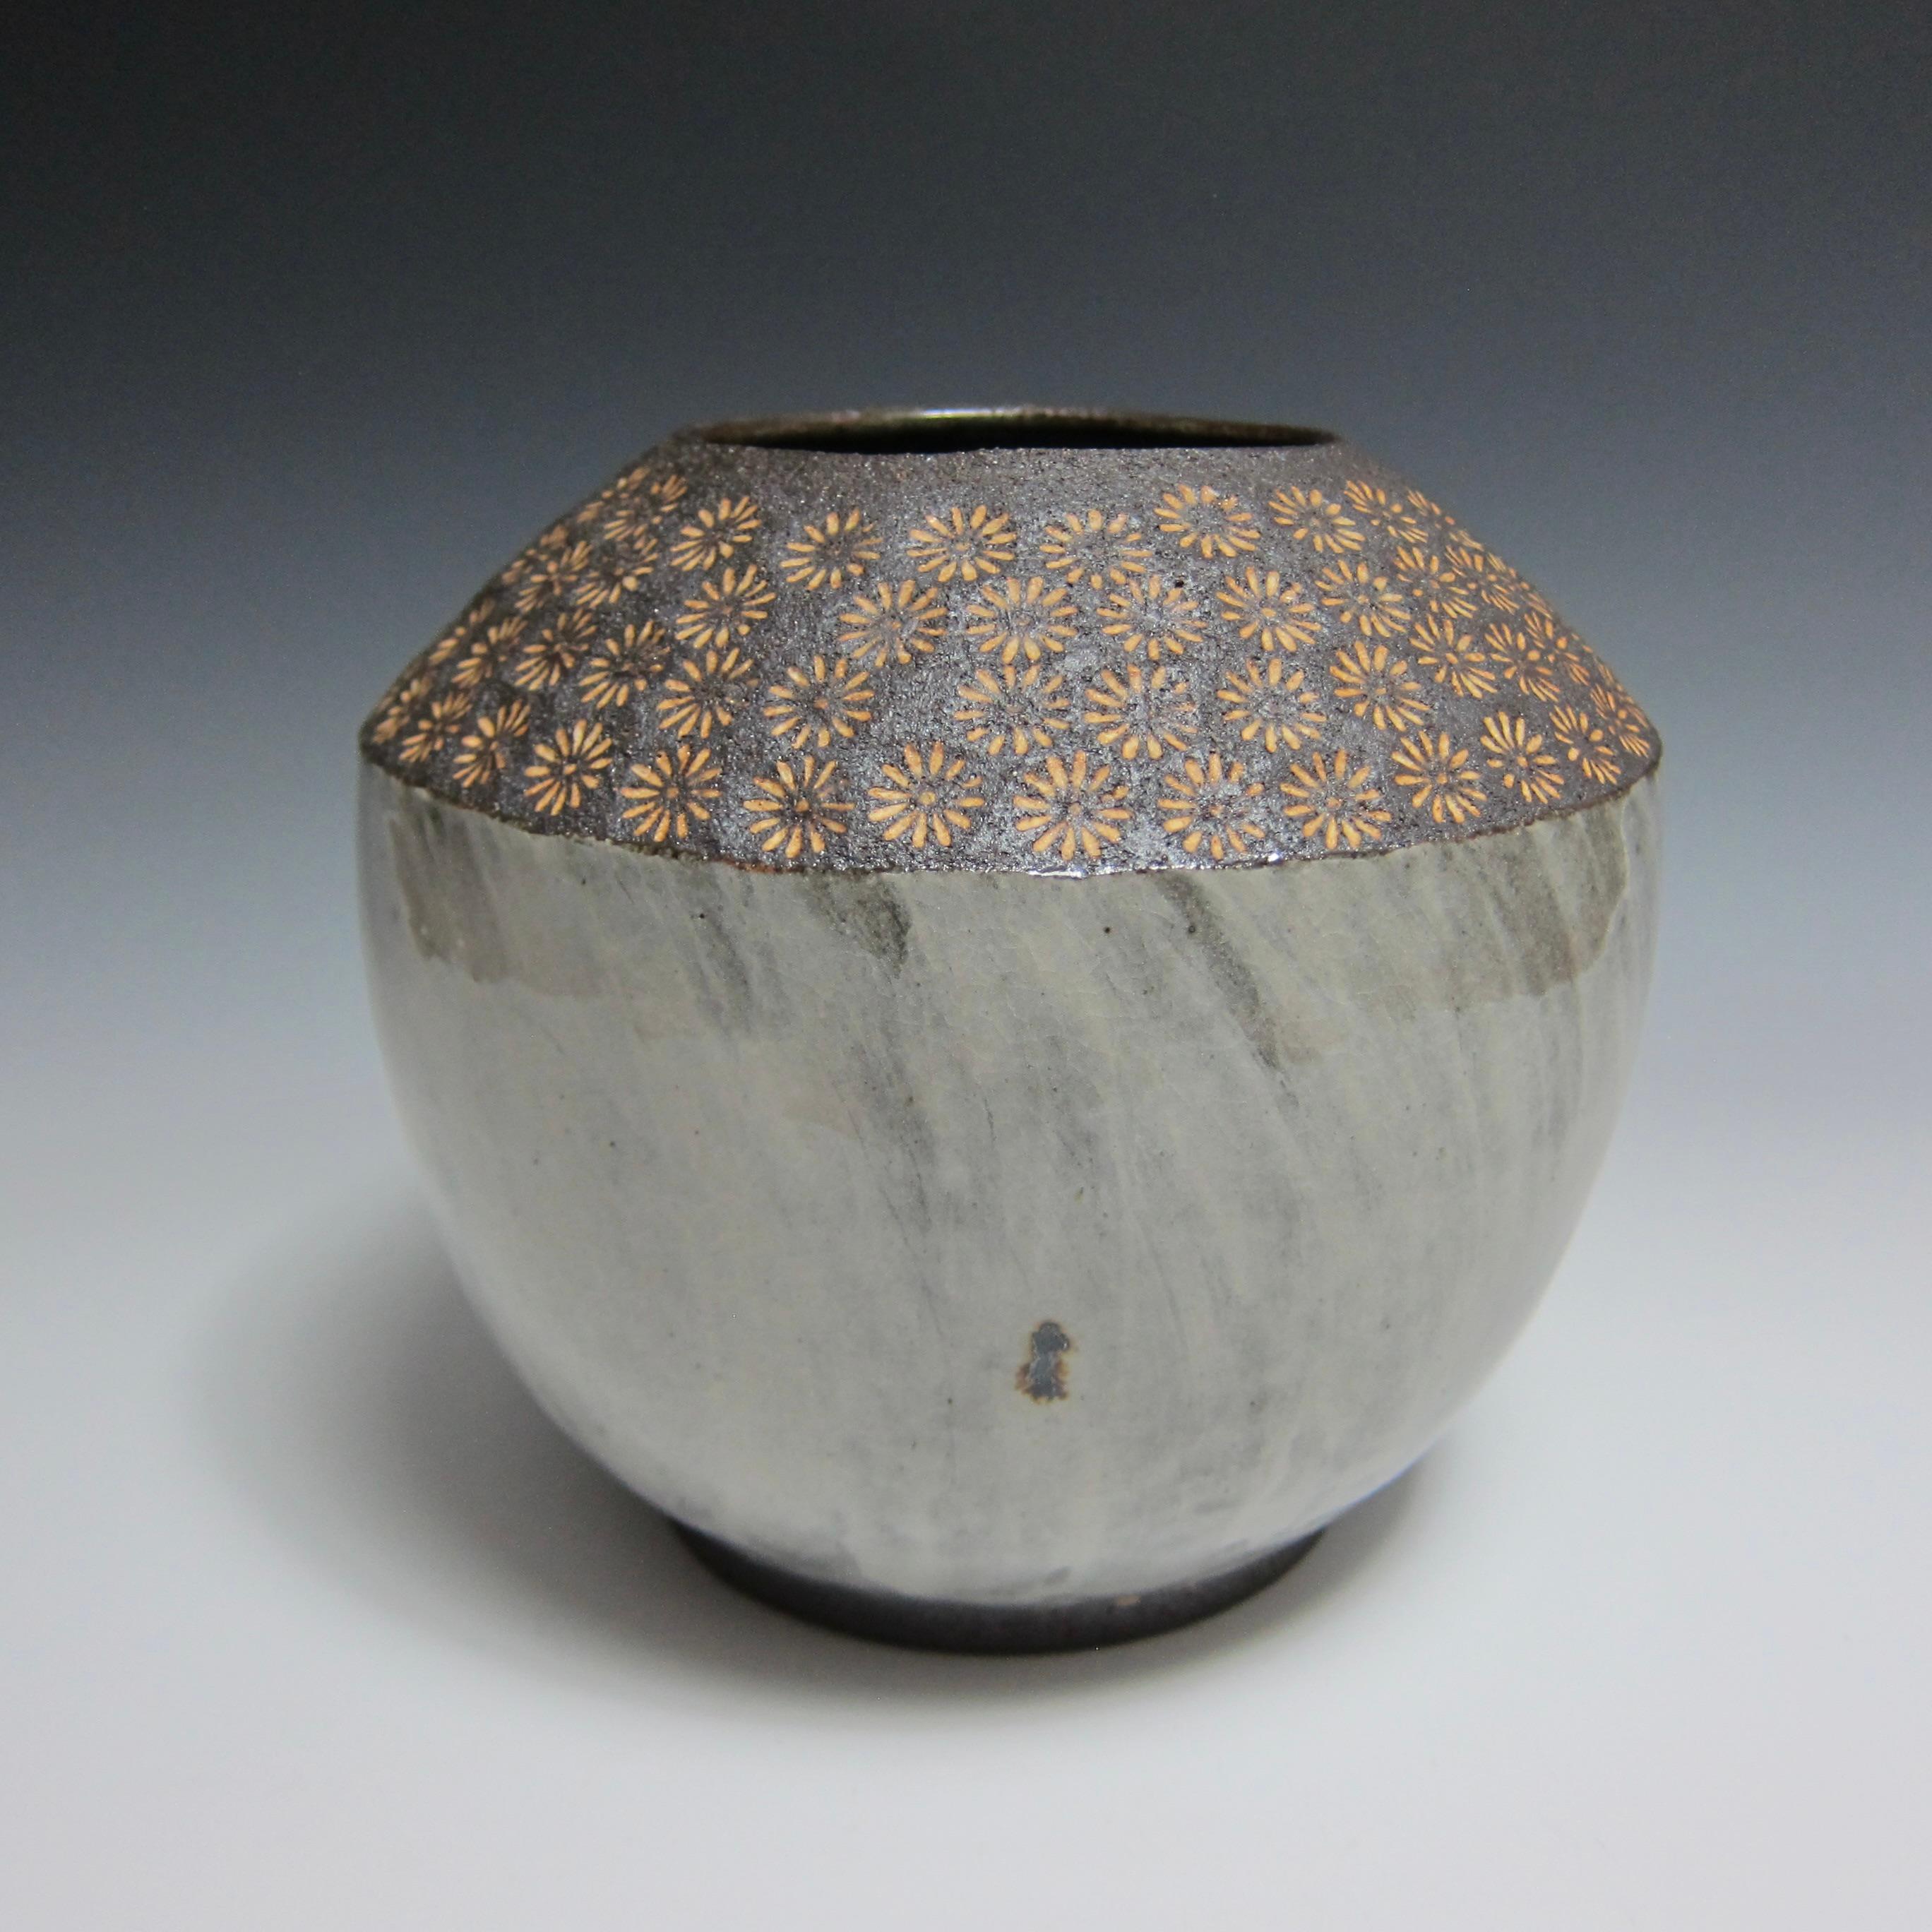 Buncheong-Vase mit Blumenstempel von Jason Fox, radgetrieben

Der amerikanische zeitgenössische Keramikkünstler Jason Fox zeigt mit dieser Vase mit Blumenprägung seine Liebe zur koreanischen Keramik und zur Buncheong-Ware.

Diese dekorative Vase